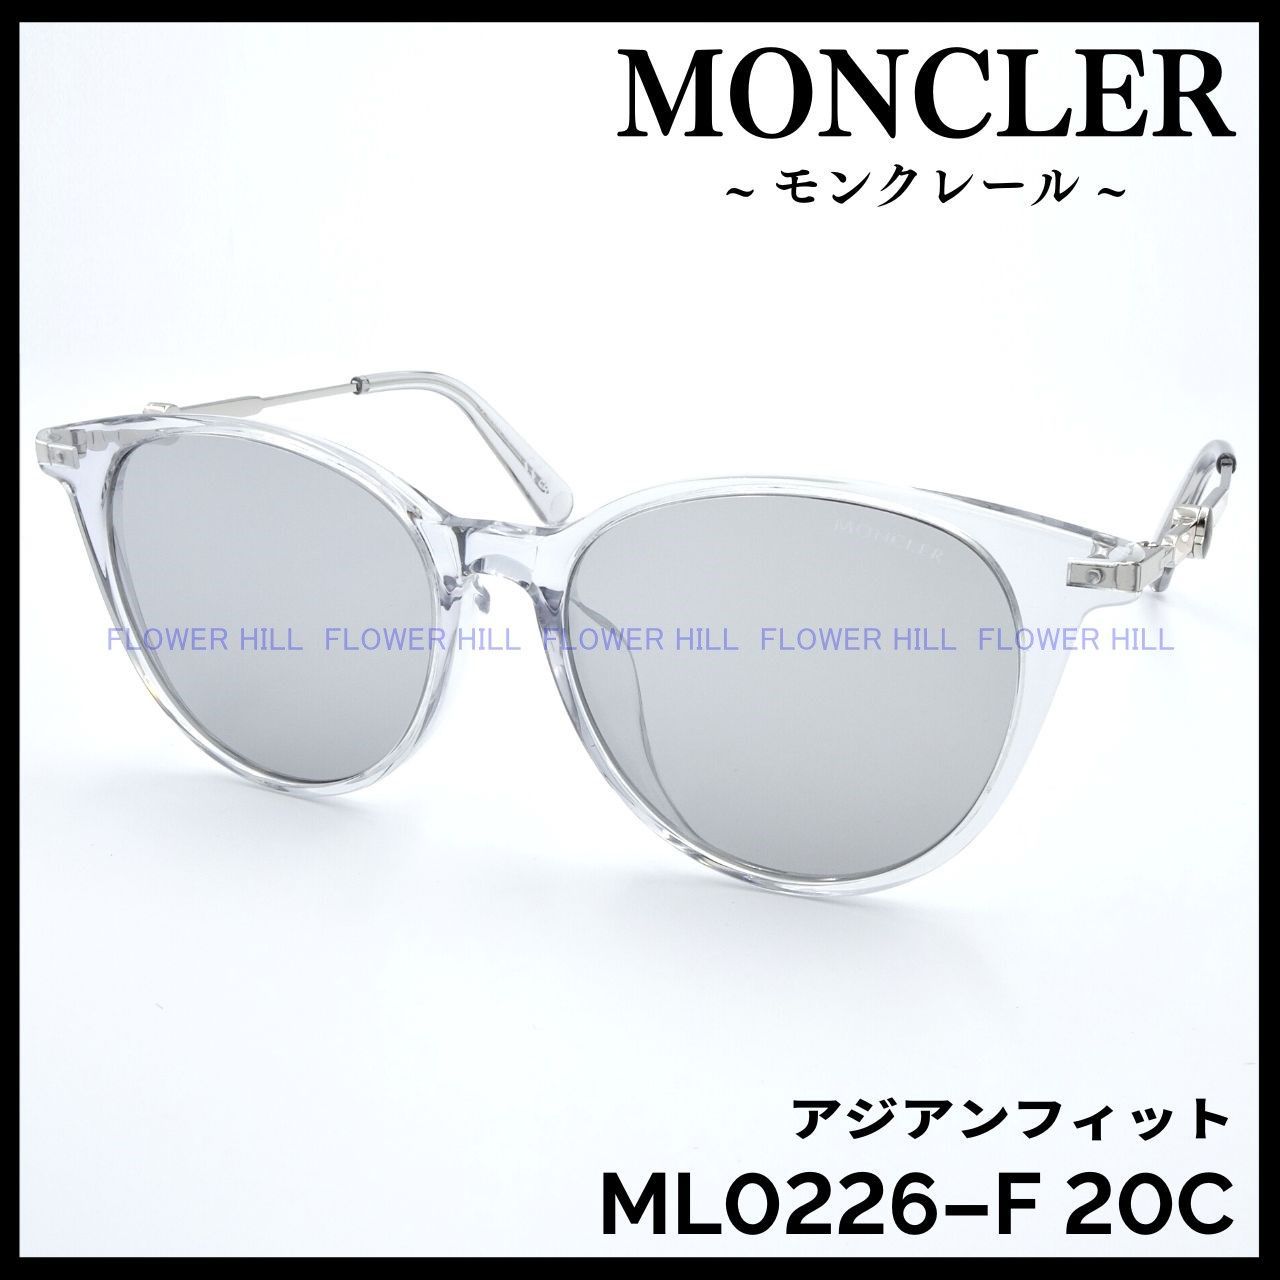 MONCLER モンクレール ML0226-F 20C サングラス クリアー イタリア製